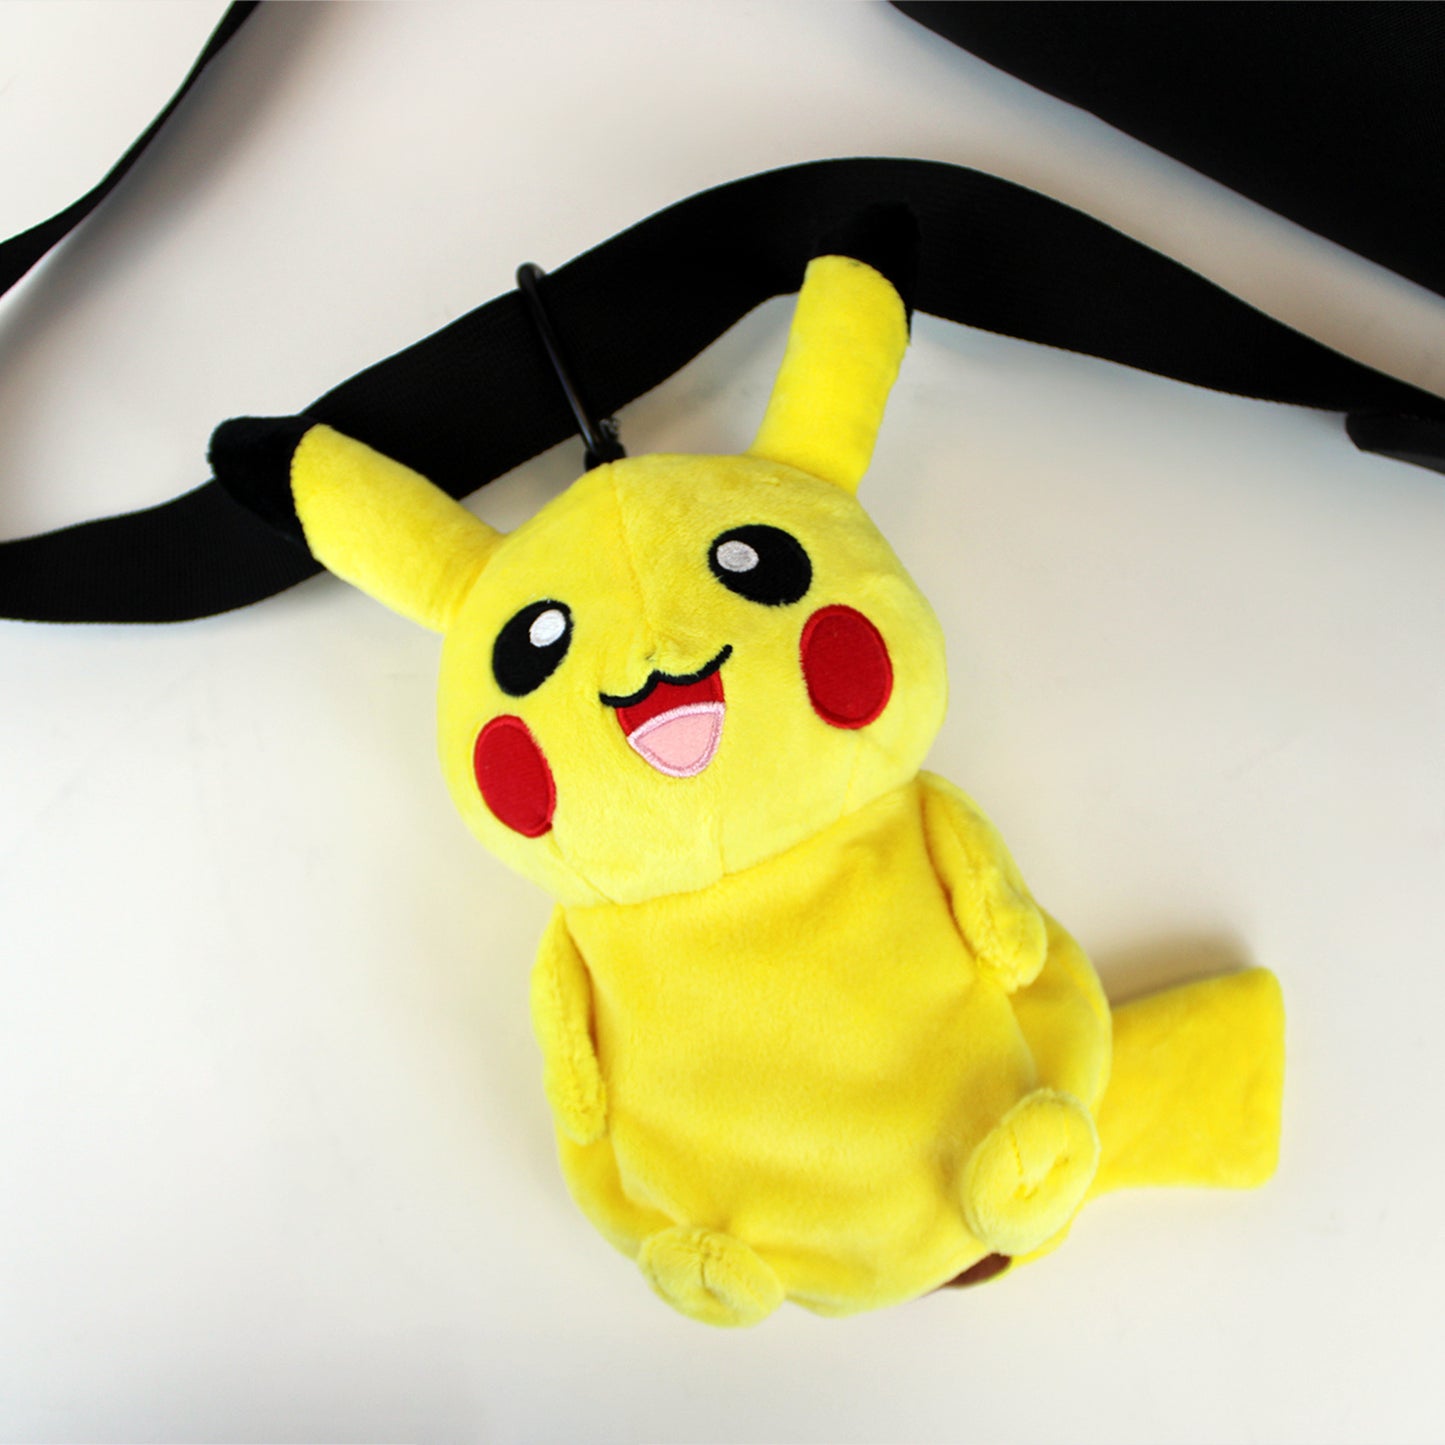 Pikachu Pokemon Zipper Plush